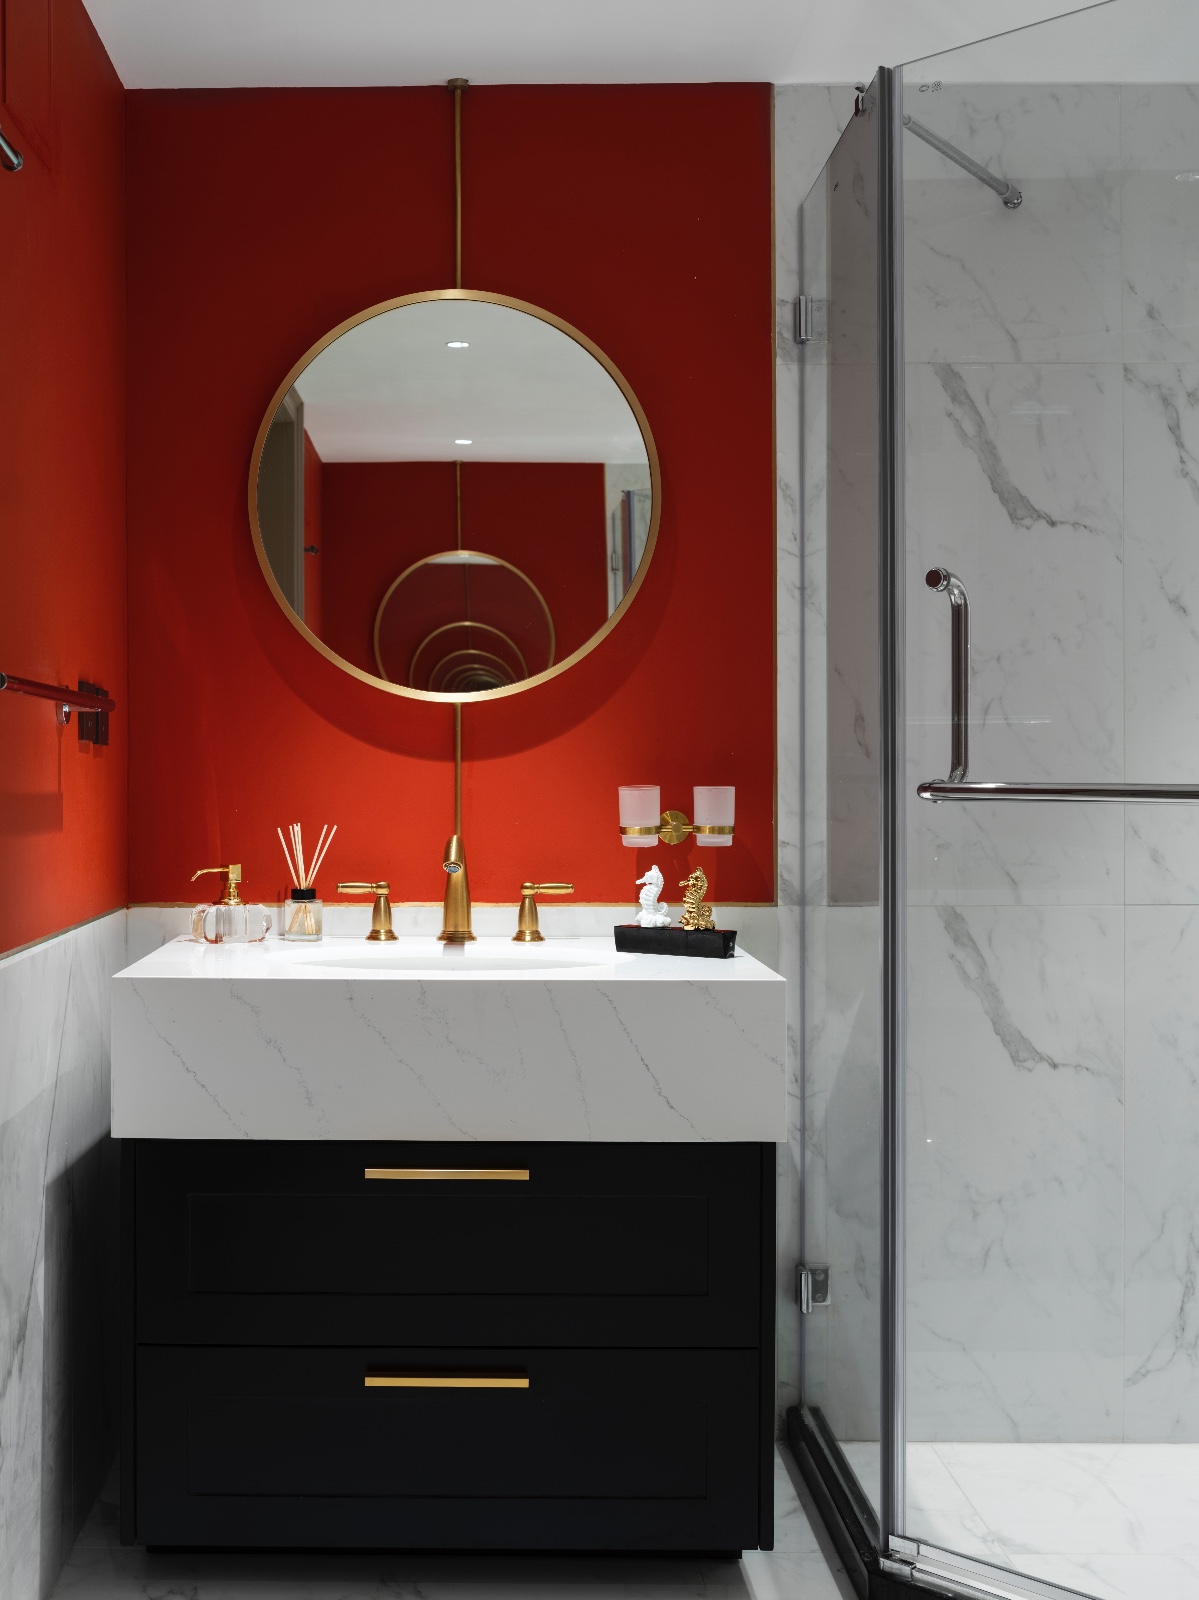 現代美式風格家裝設計室內裝修效果圖-衛生間浴室柜